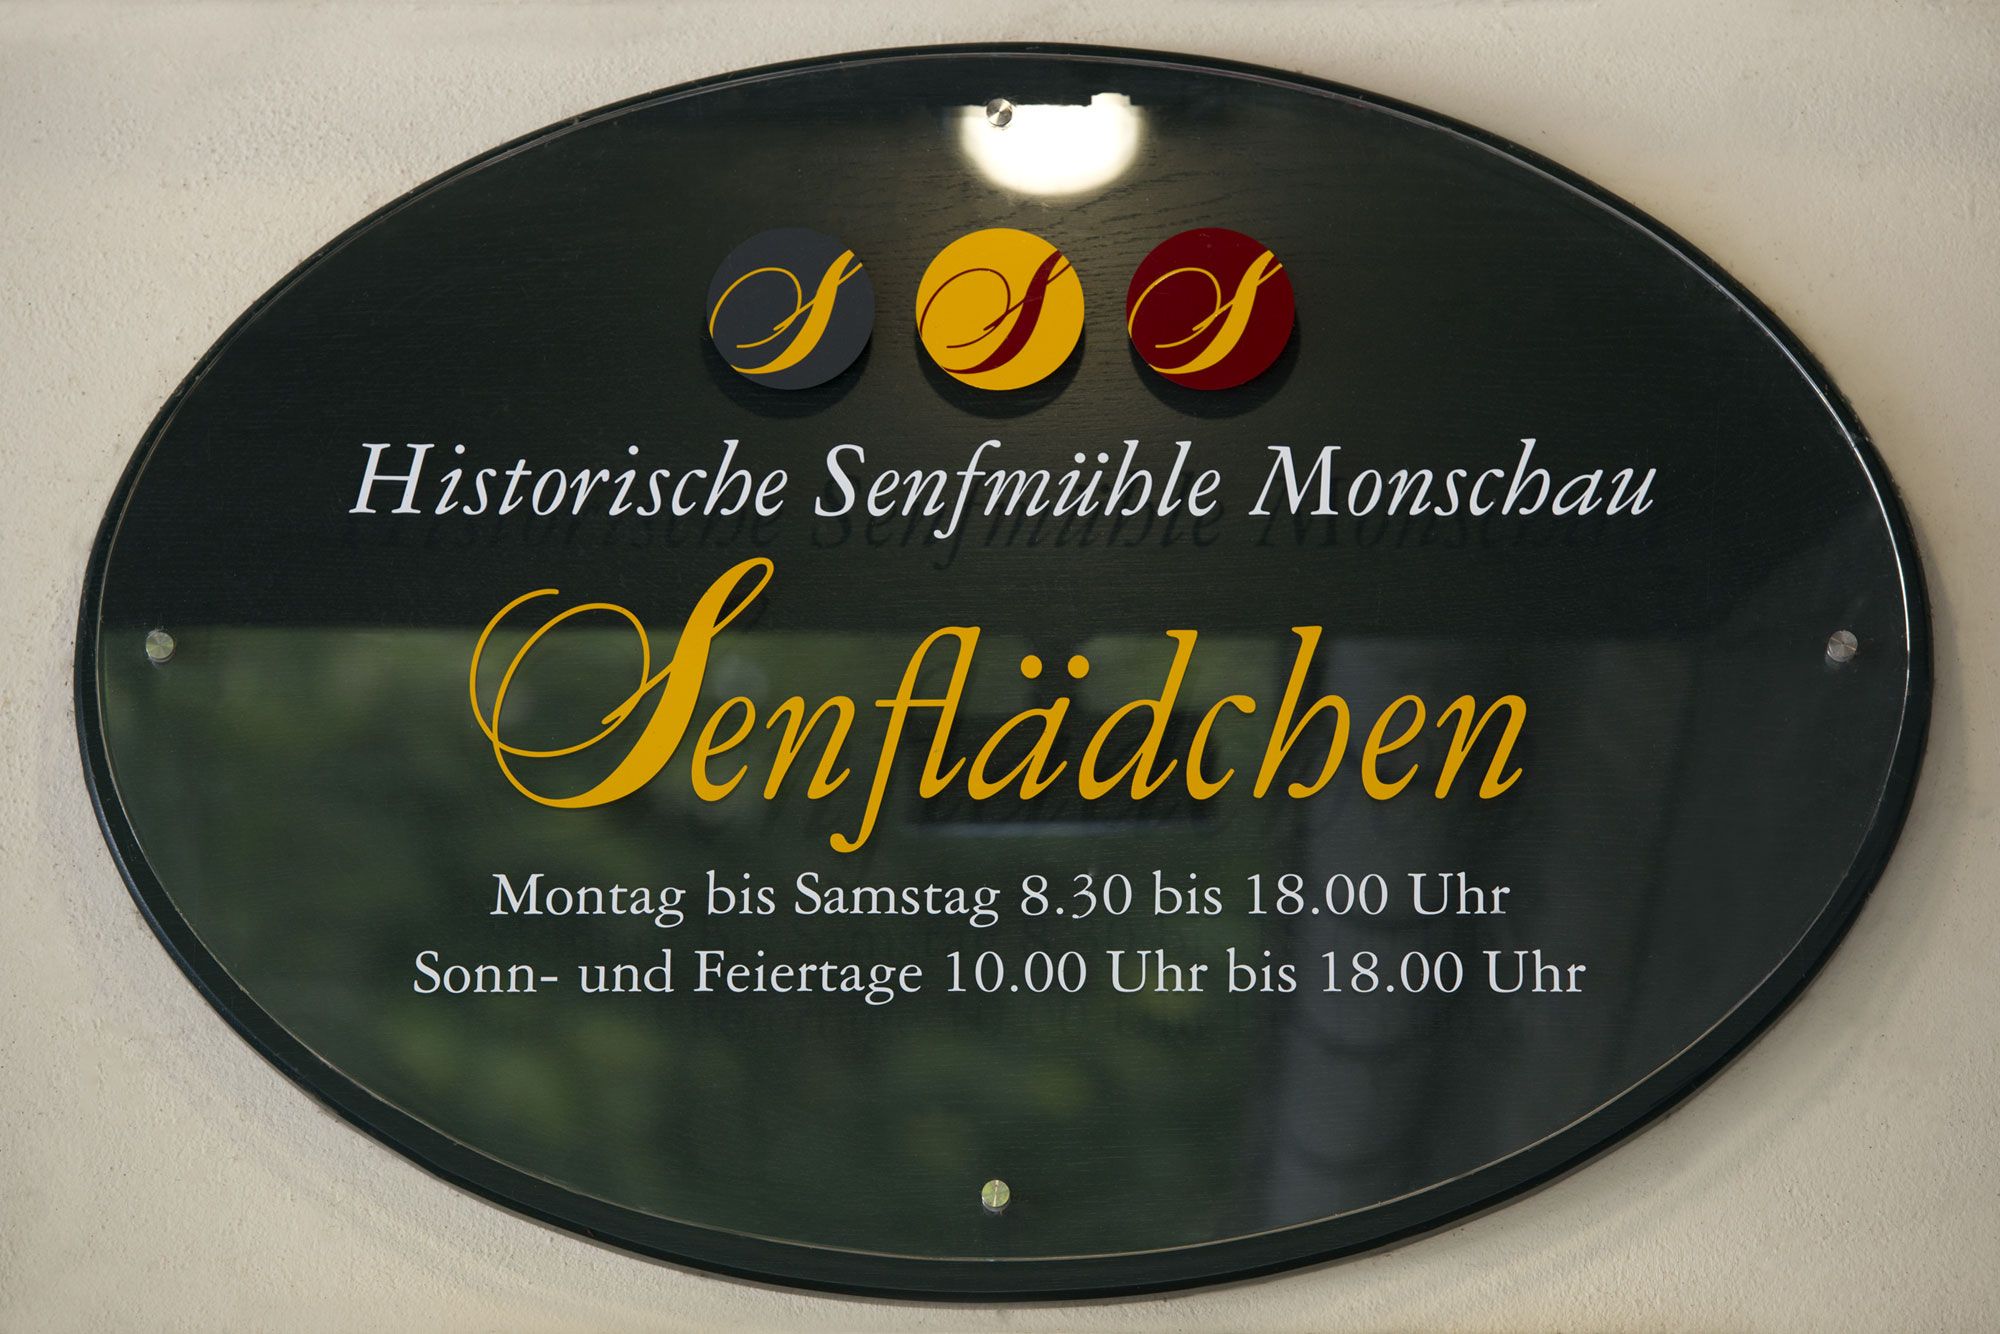 Historische Senfmühle Monschau